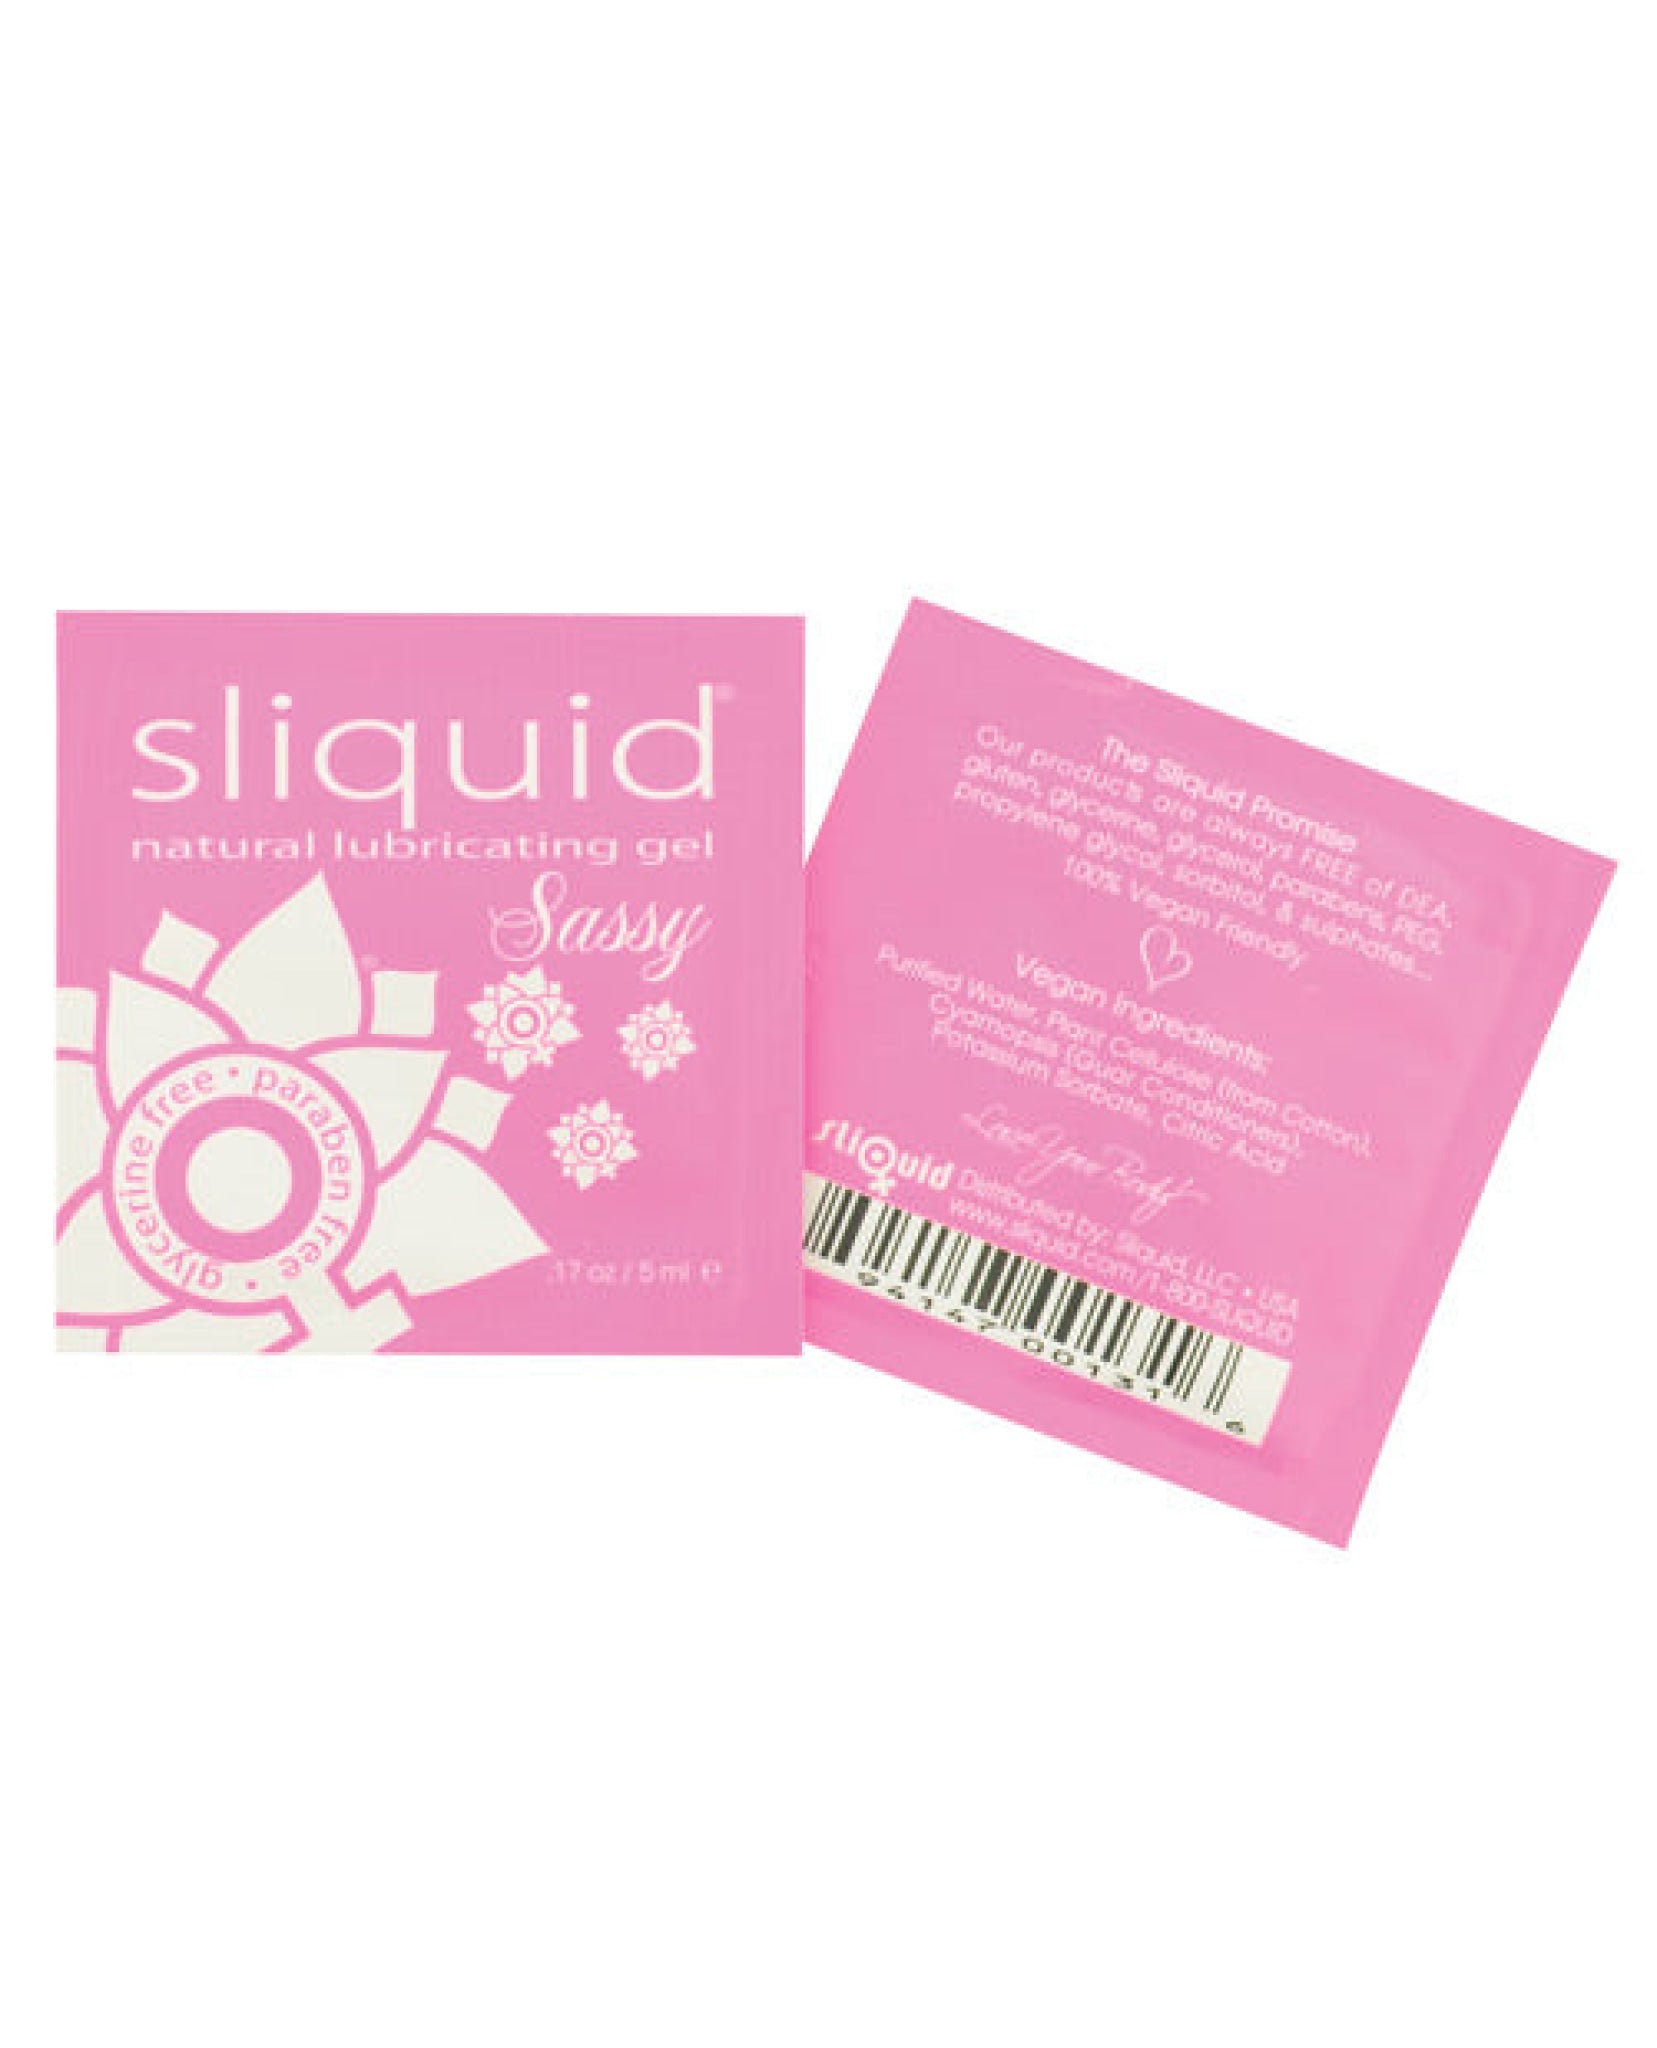 Sliquid Naturals Sassy Pillows - .17 Oz Sliquid